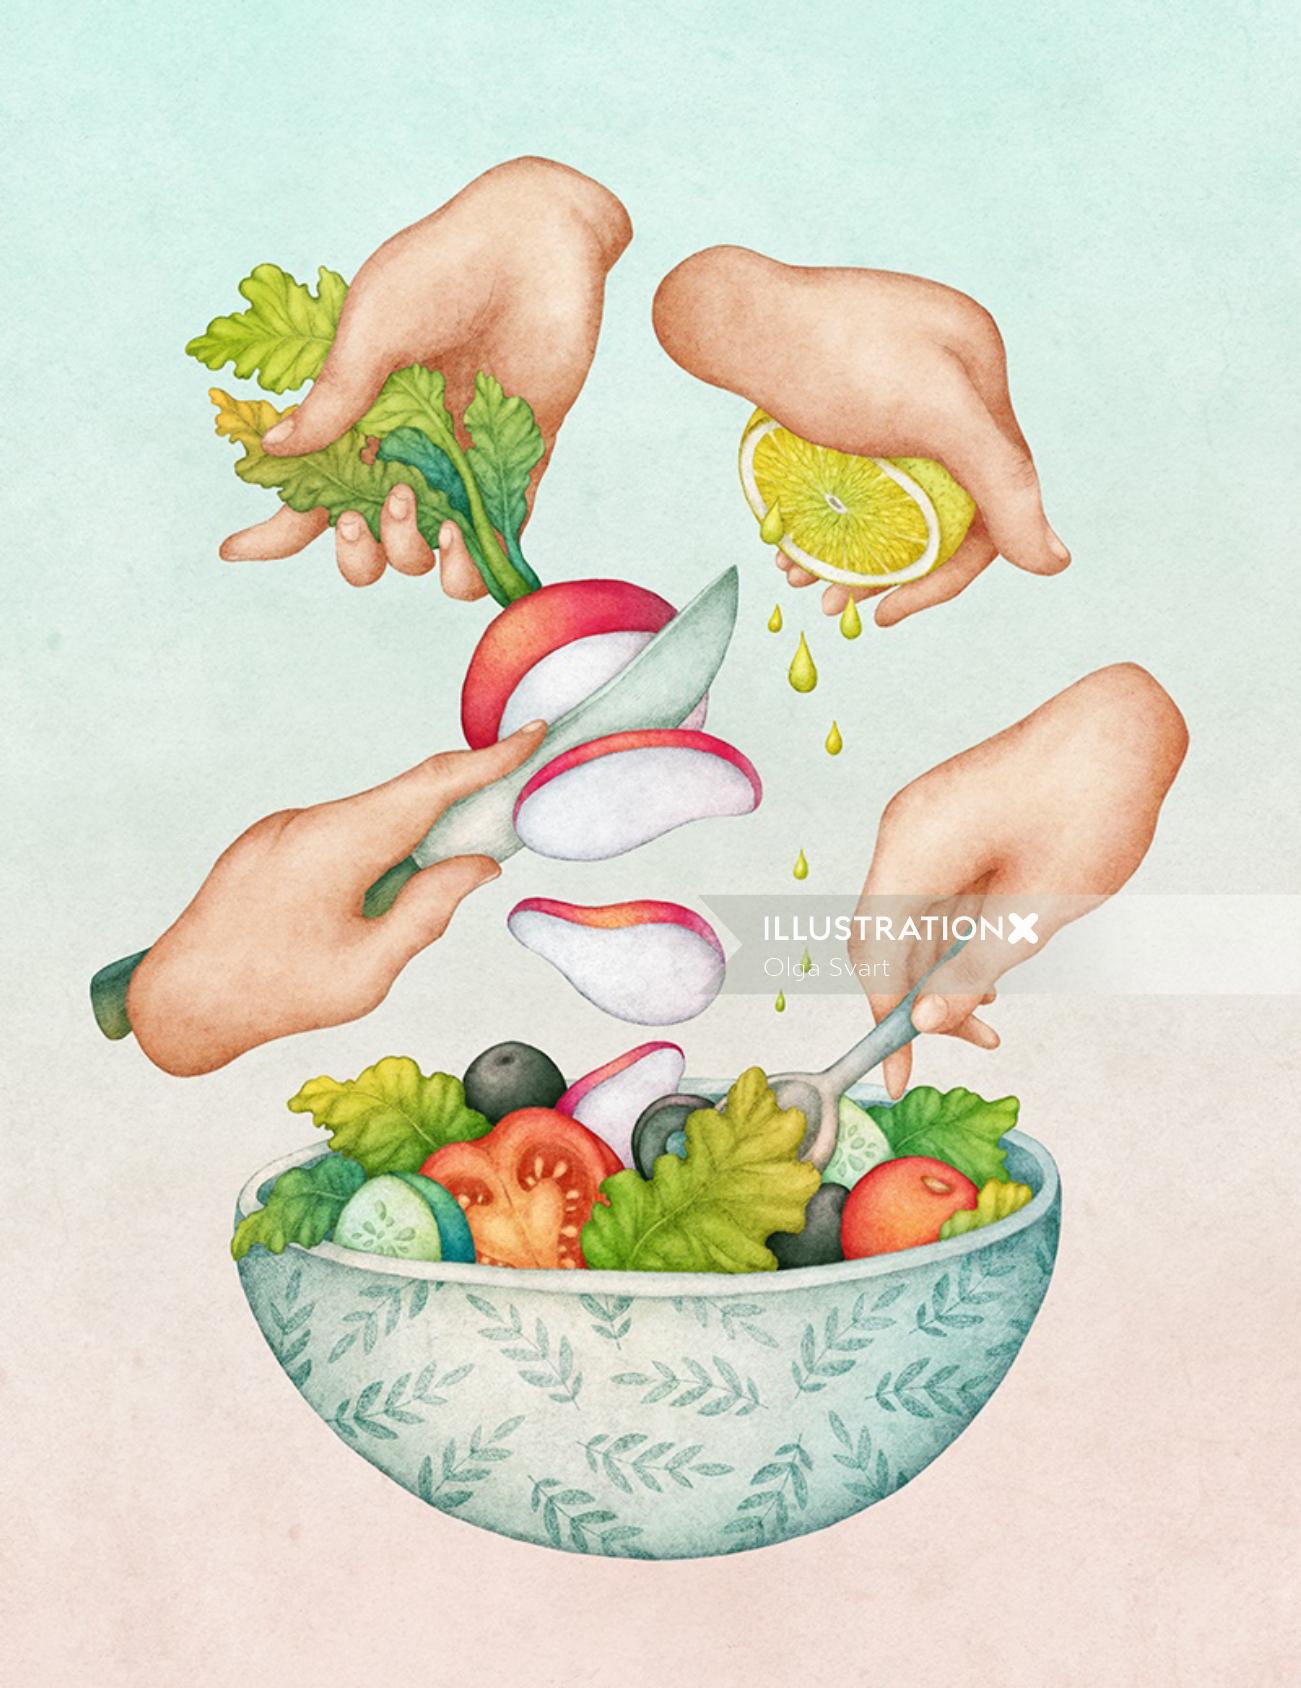 Illustration of green salad by olga svart